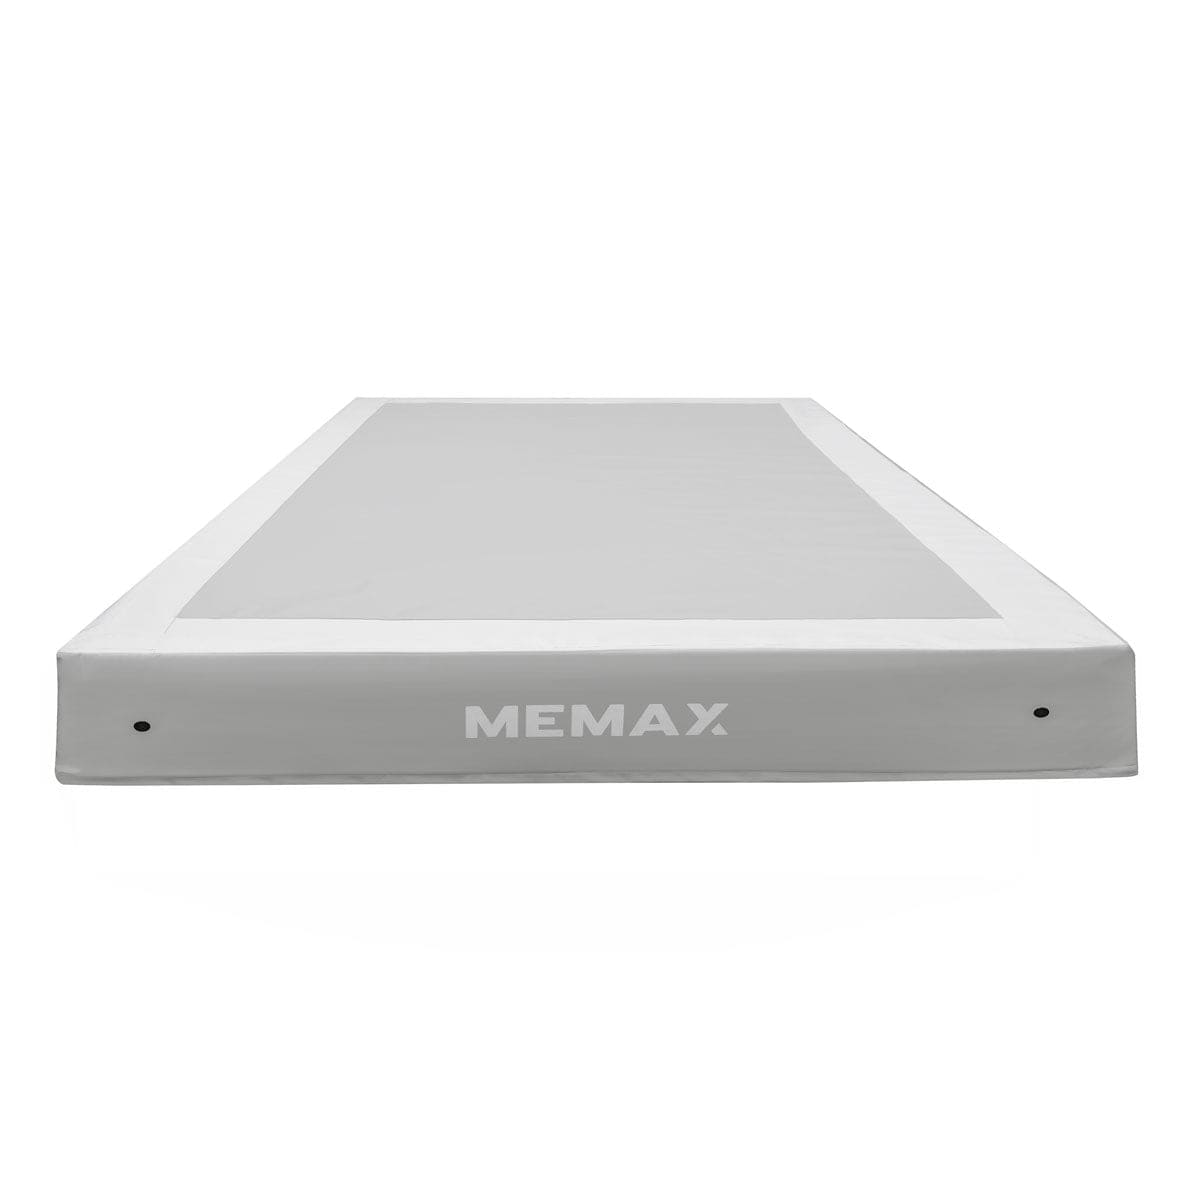 MEMAX 20cm Thick Crash Mat Safety Landing Mat - 200x150x20cm - Soft